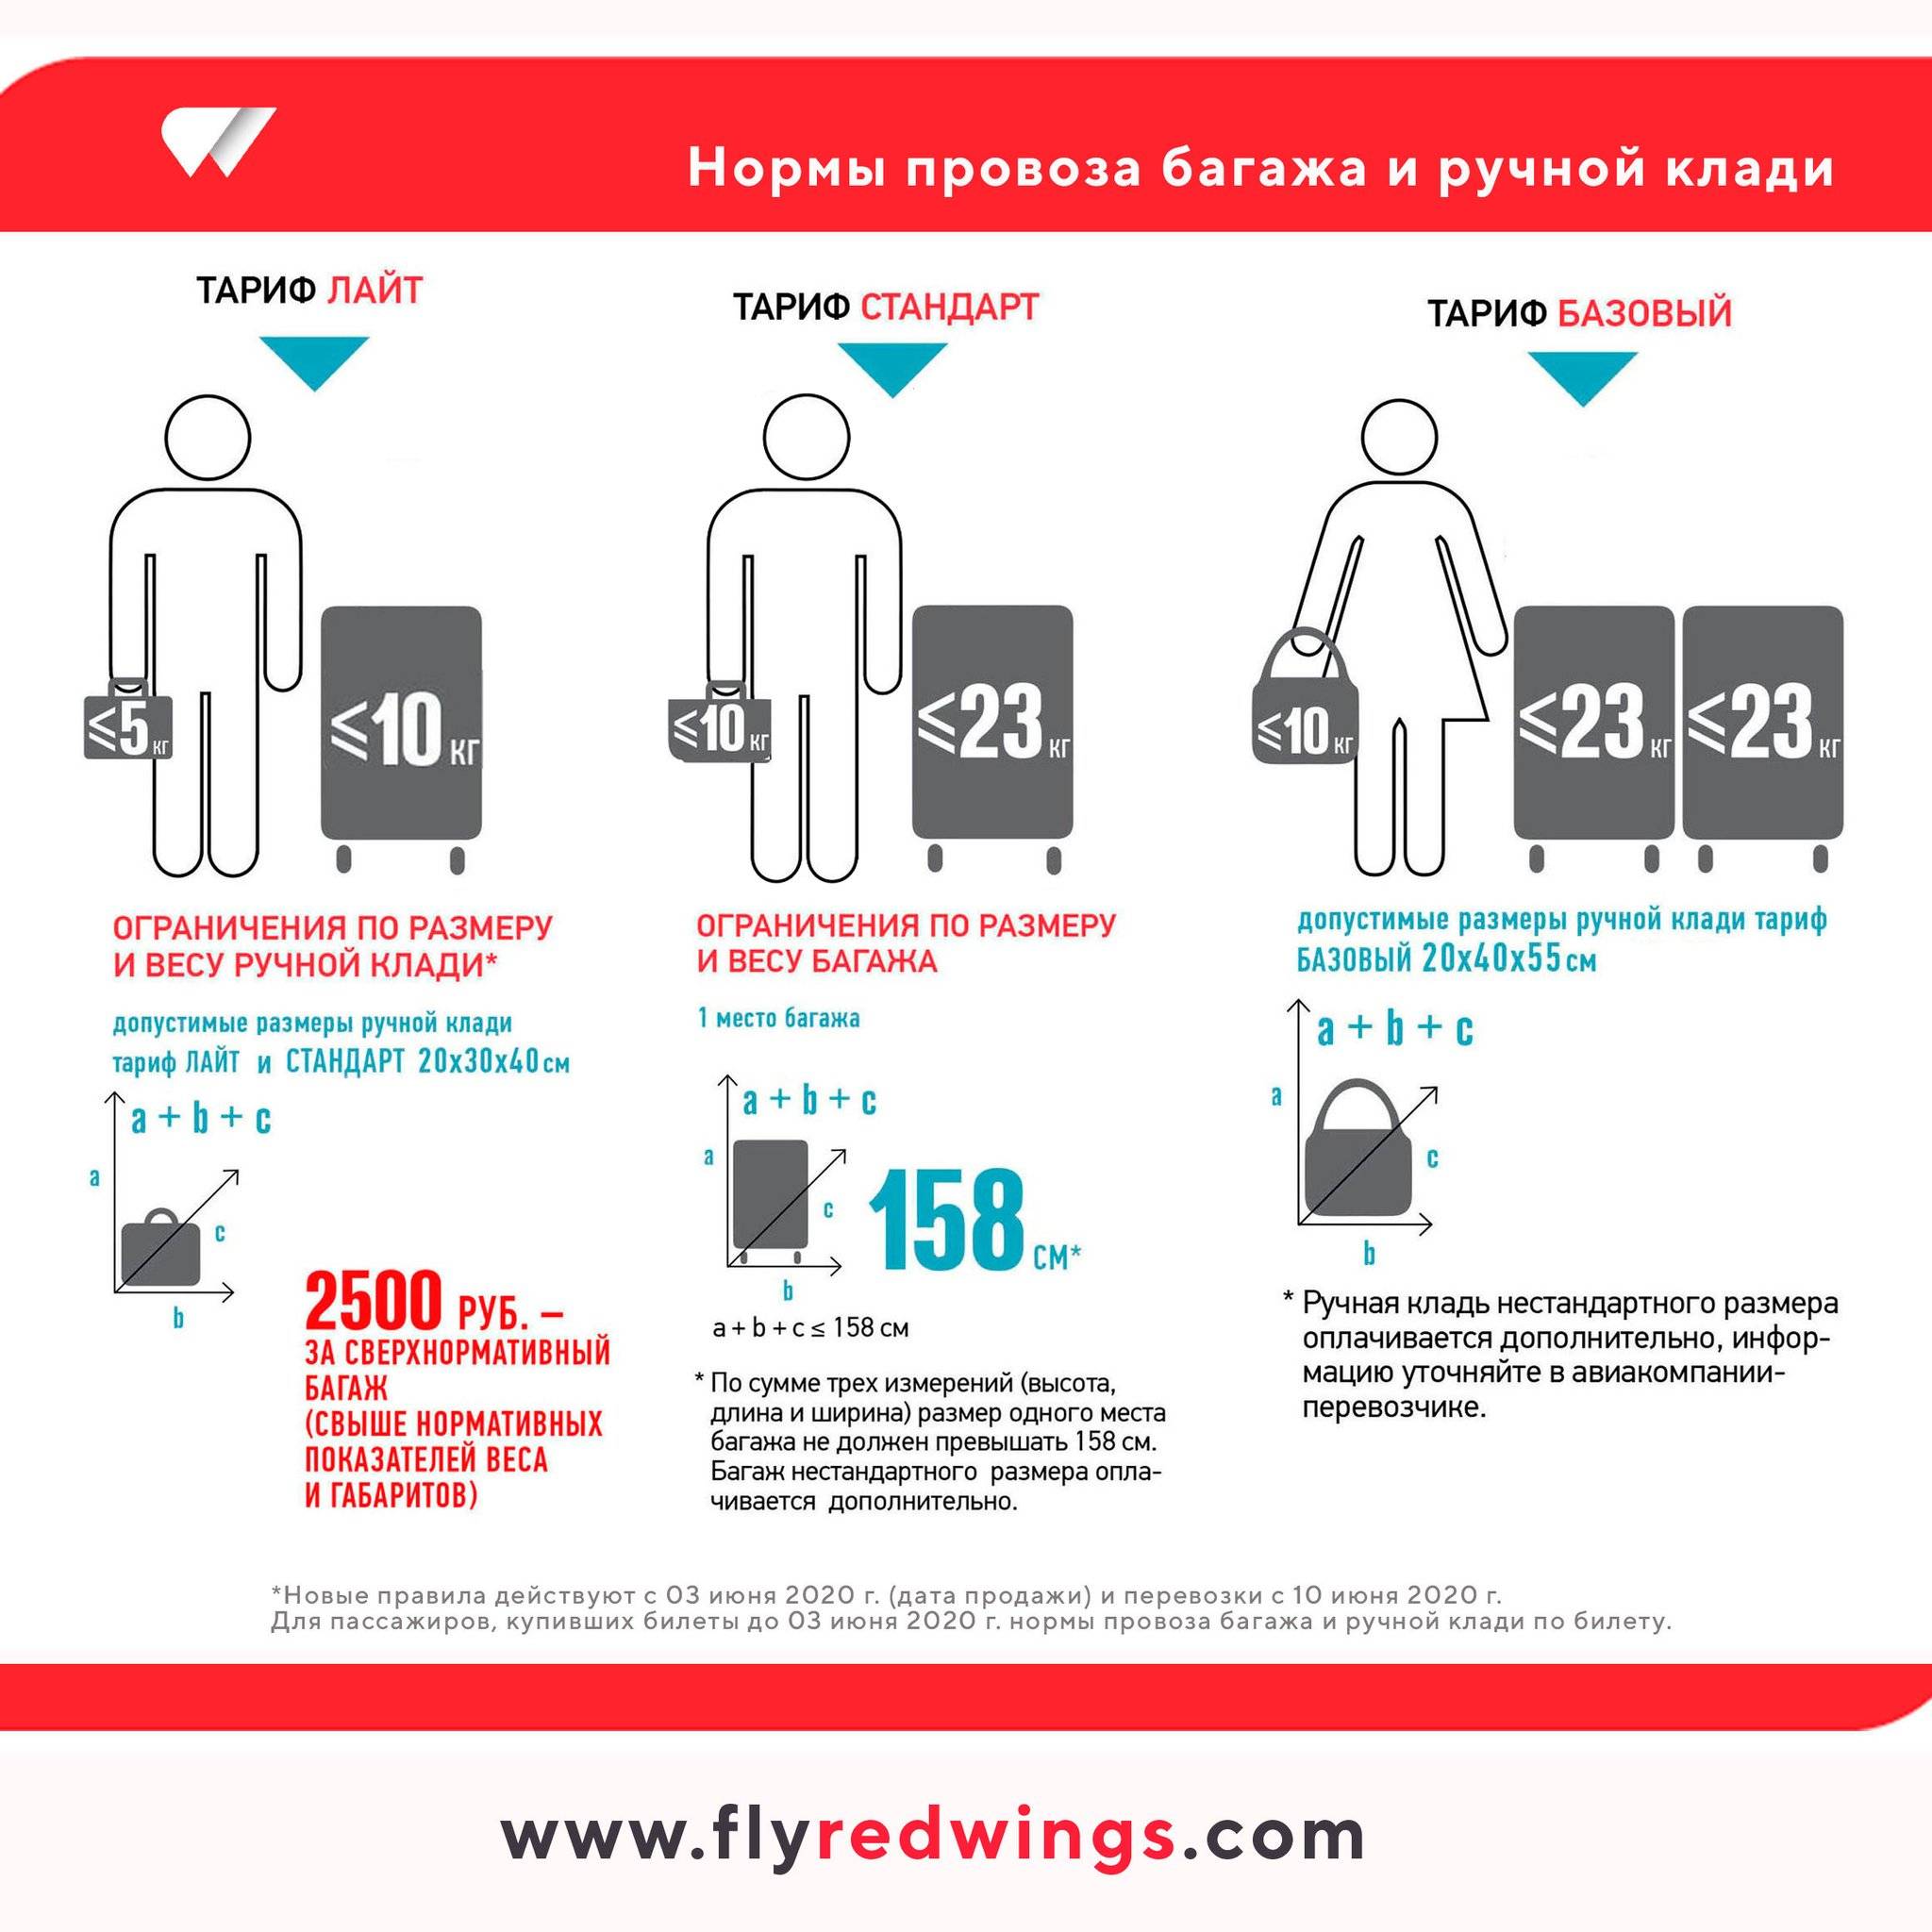 Авиакомпания «Якутия»: правила регистрации и нормы провоза багажа и ручной клади